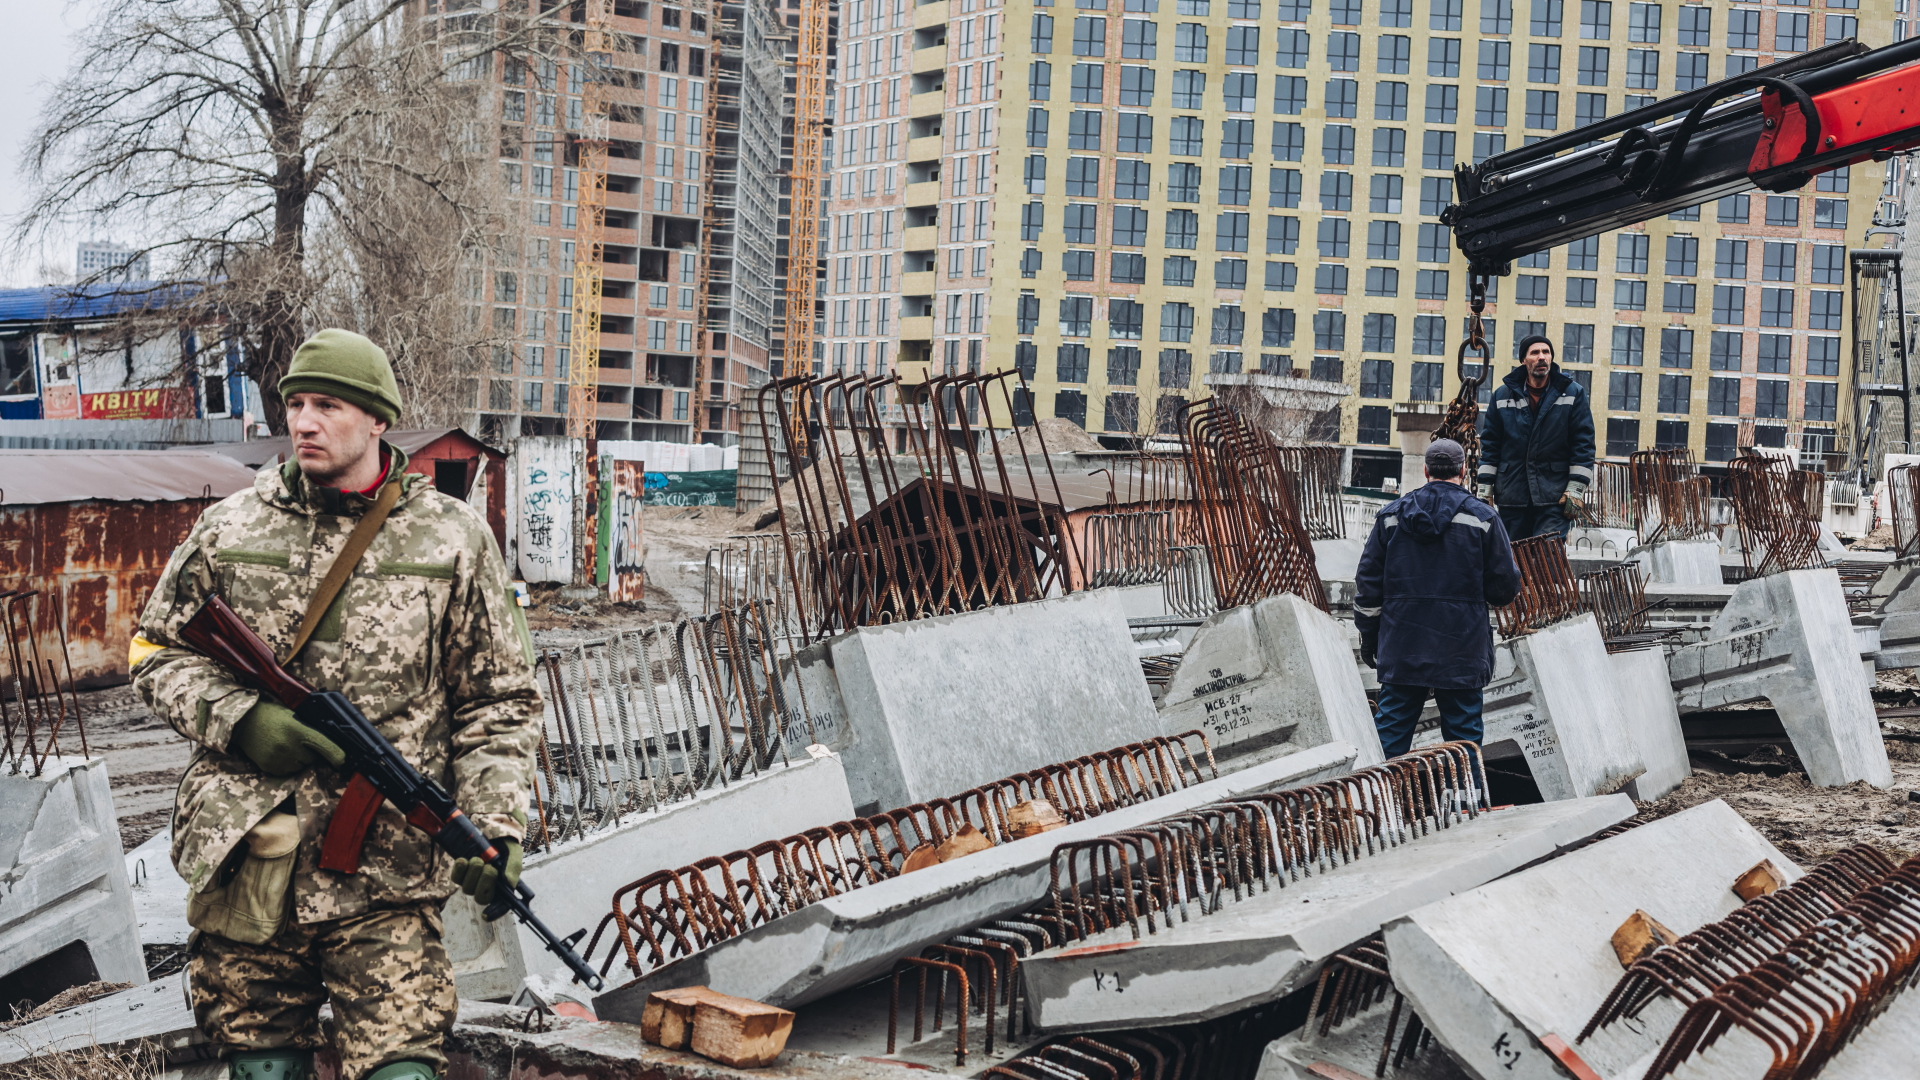 Arbeiter laden in Kiew Betonplattenab, während ein bewaffneter ukrainischer Mann Wache steht.  | dpa